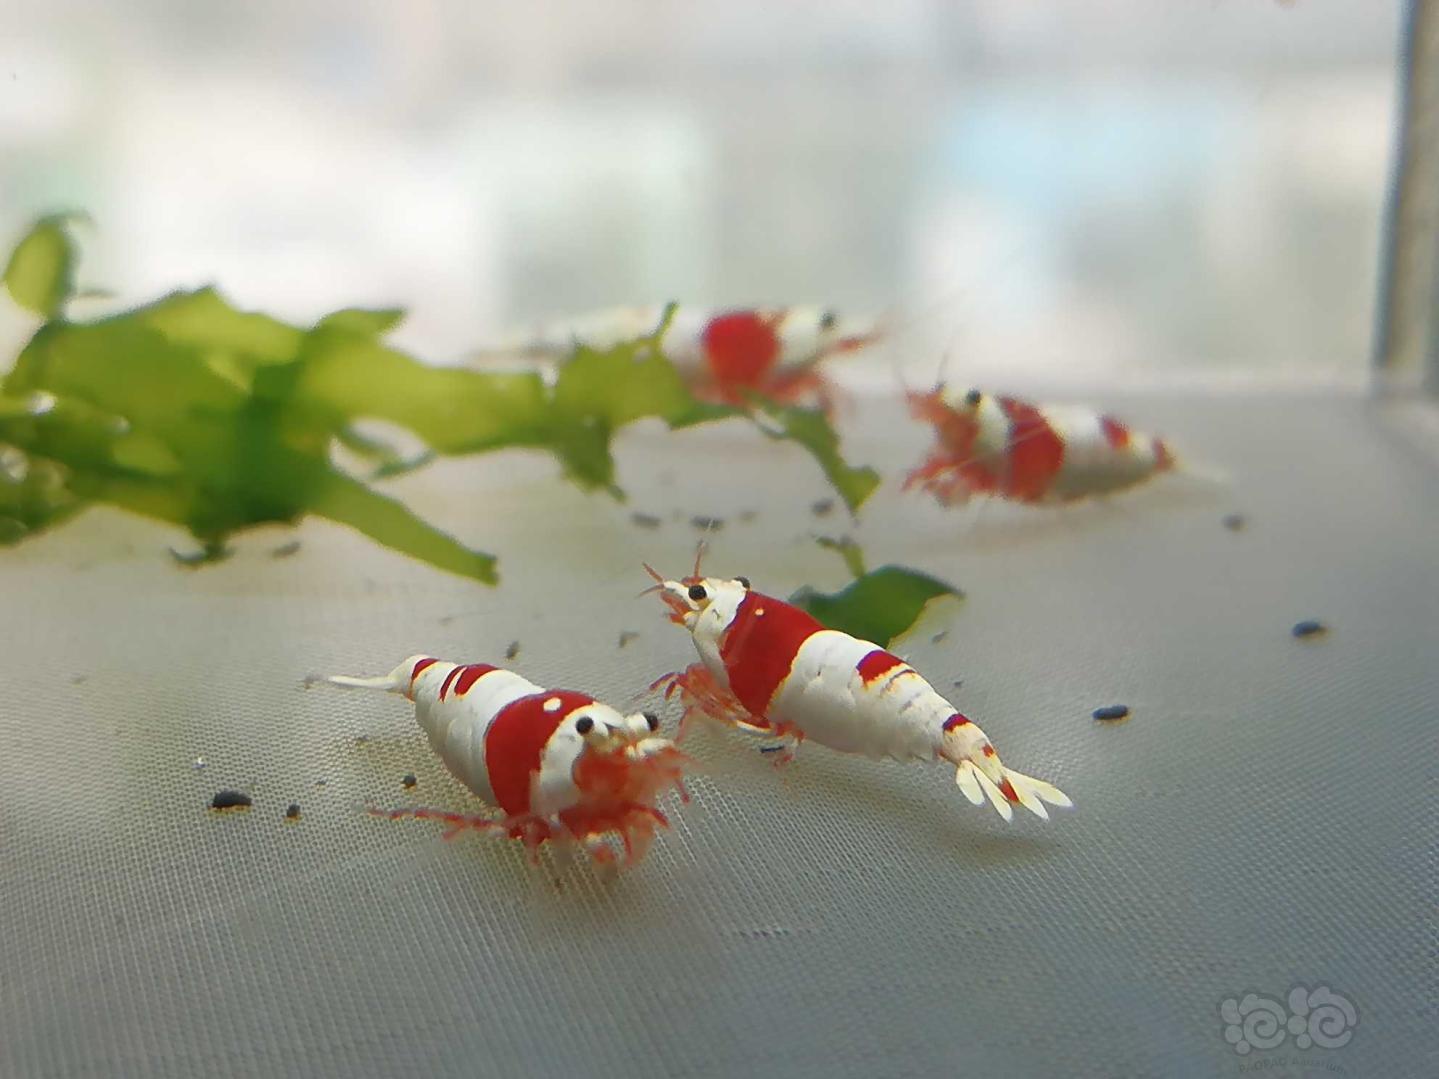 【虾】2020-07-31#RMB拍卖#红白纯血水晶虾一份6只-图7